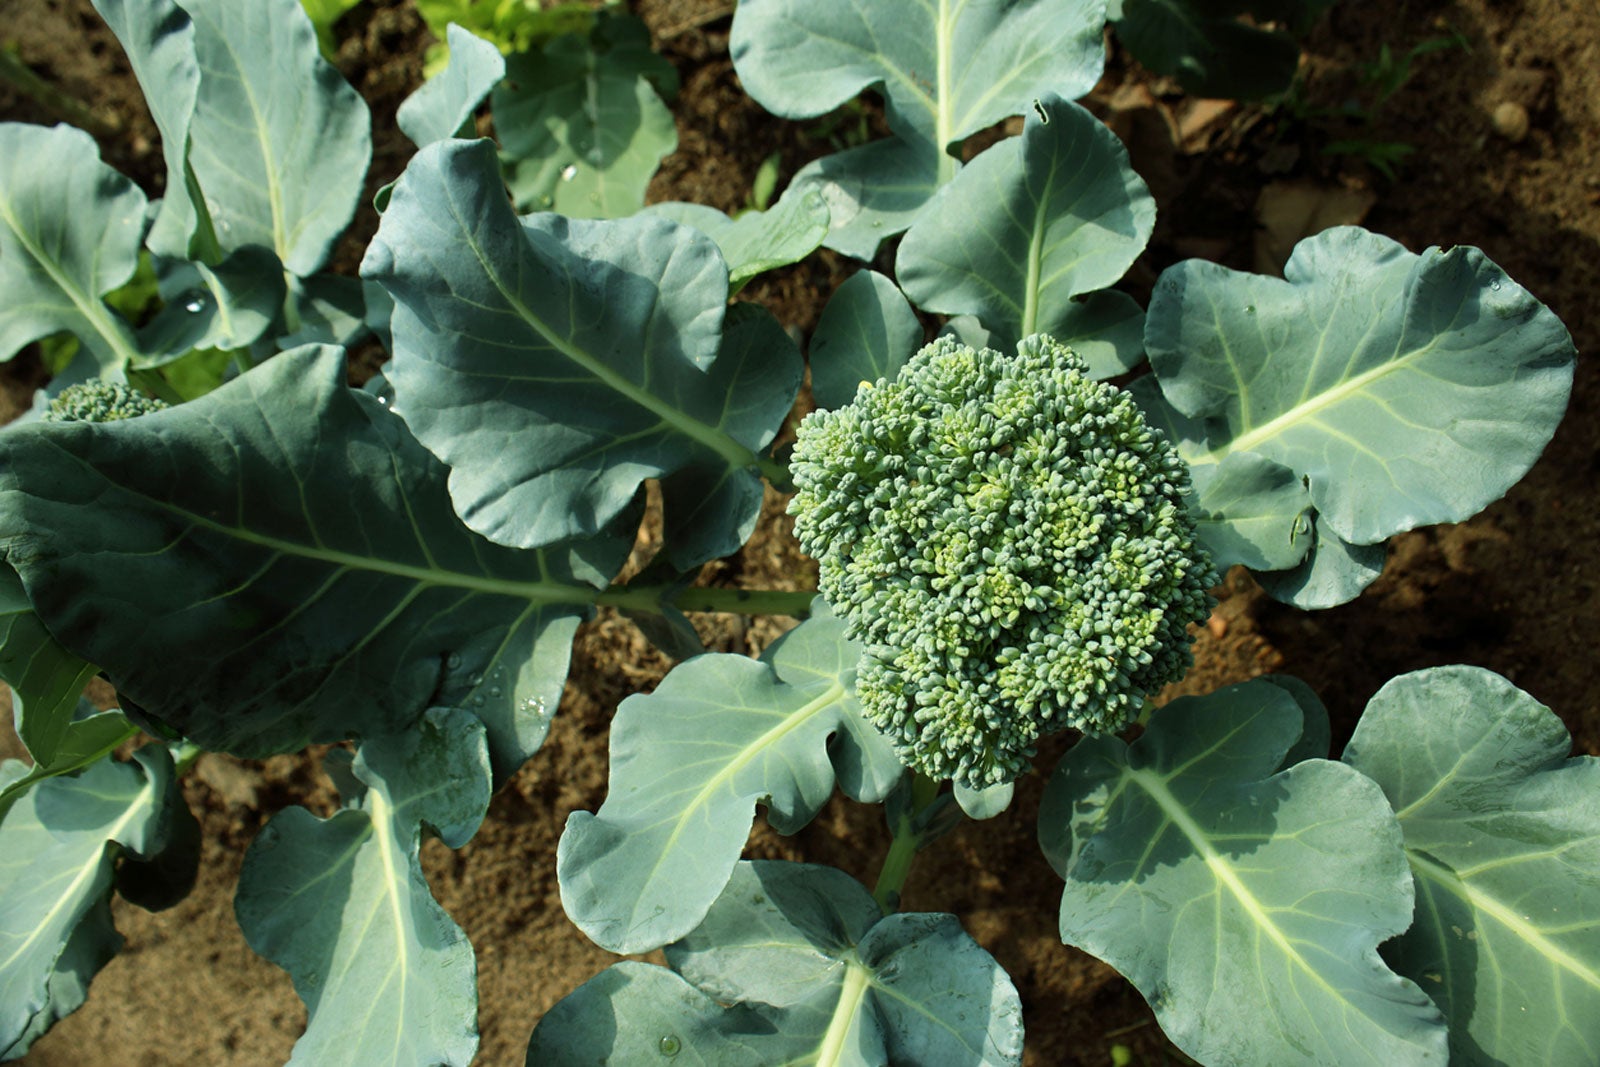 Growing Broccoli in a Home Garden